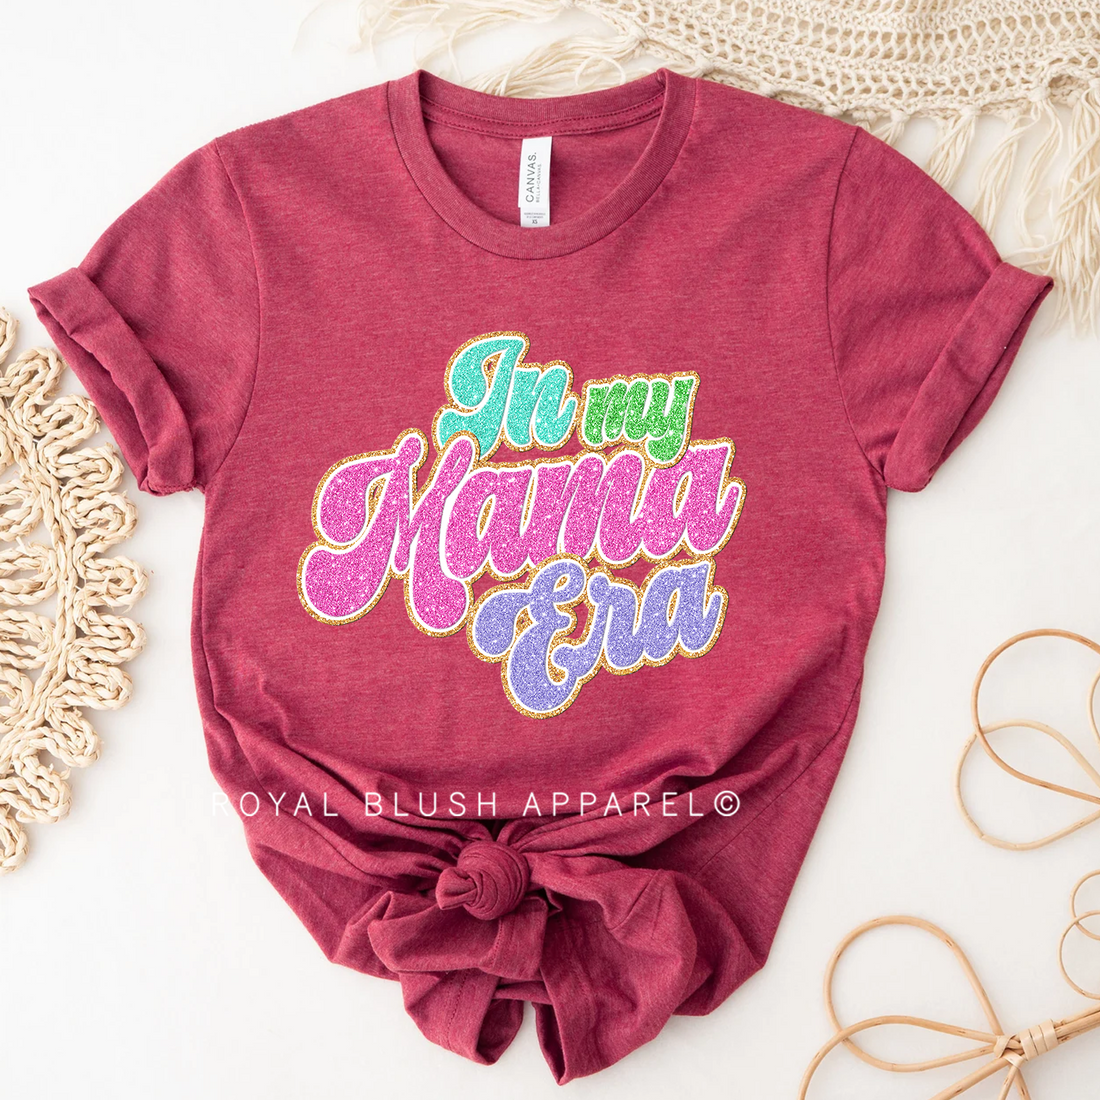 Stars Mama X3 T-shirt unisexe décontracté